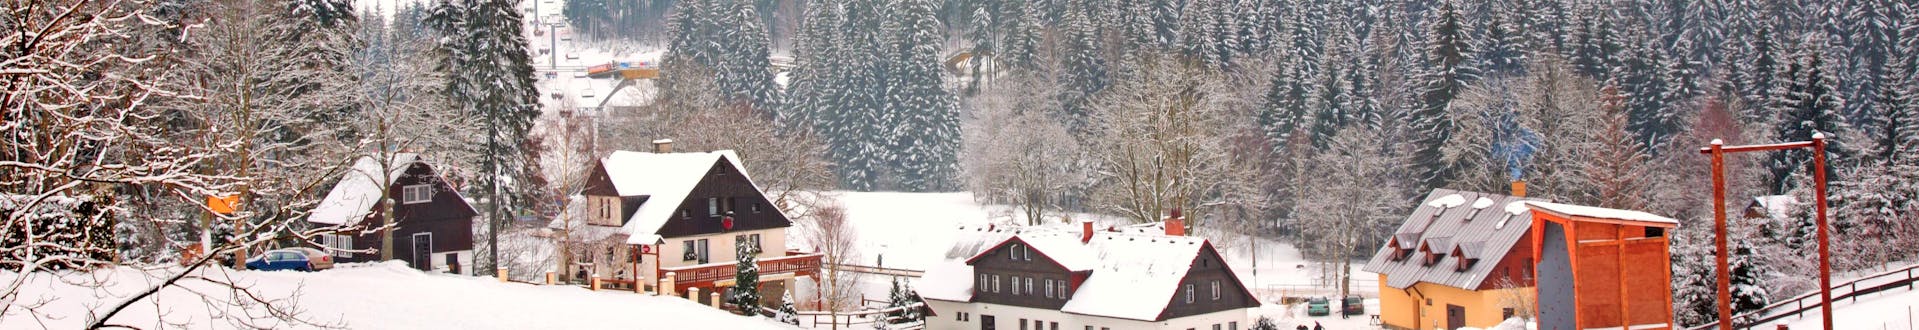 Bild einer kleinen Stadt in Certova Hora - Harrachov in der Tschechischen Republik im Winter